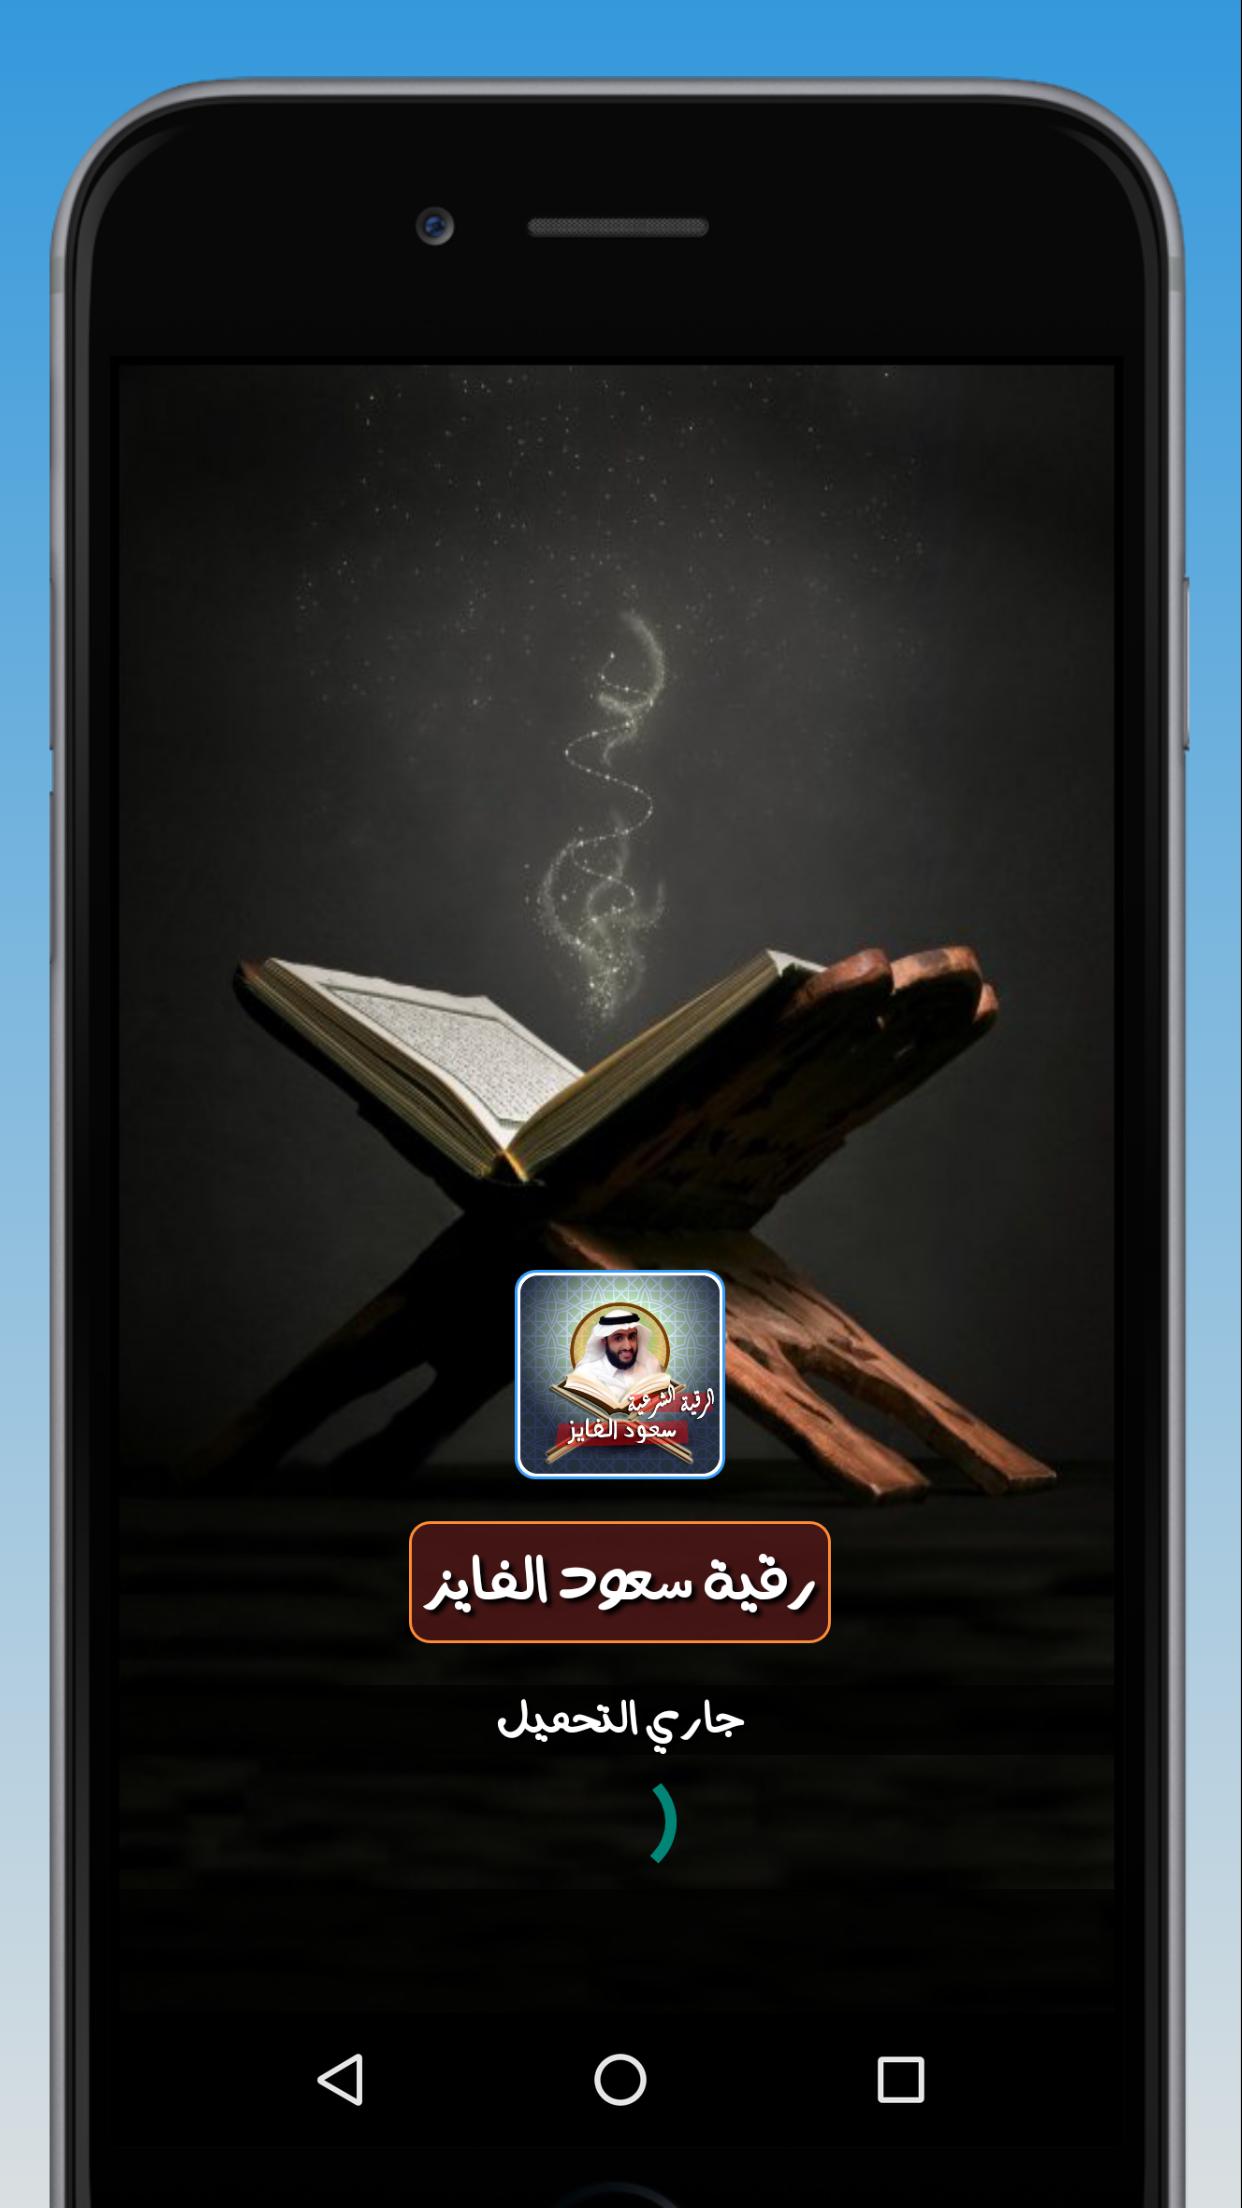 رقية الشيخ سعود الفايز كاملة لعلاج السحر والحسد for Android - APK Download